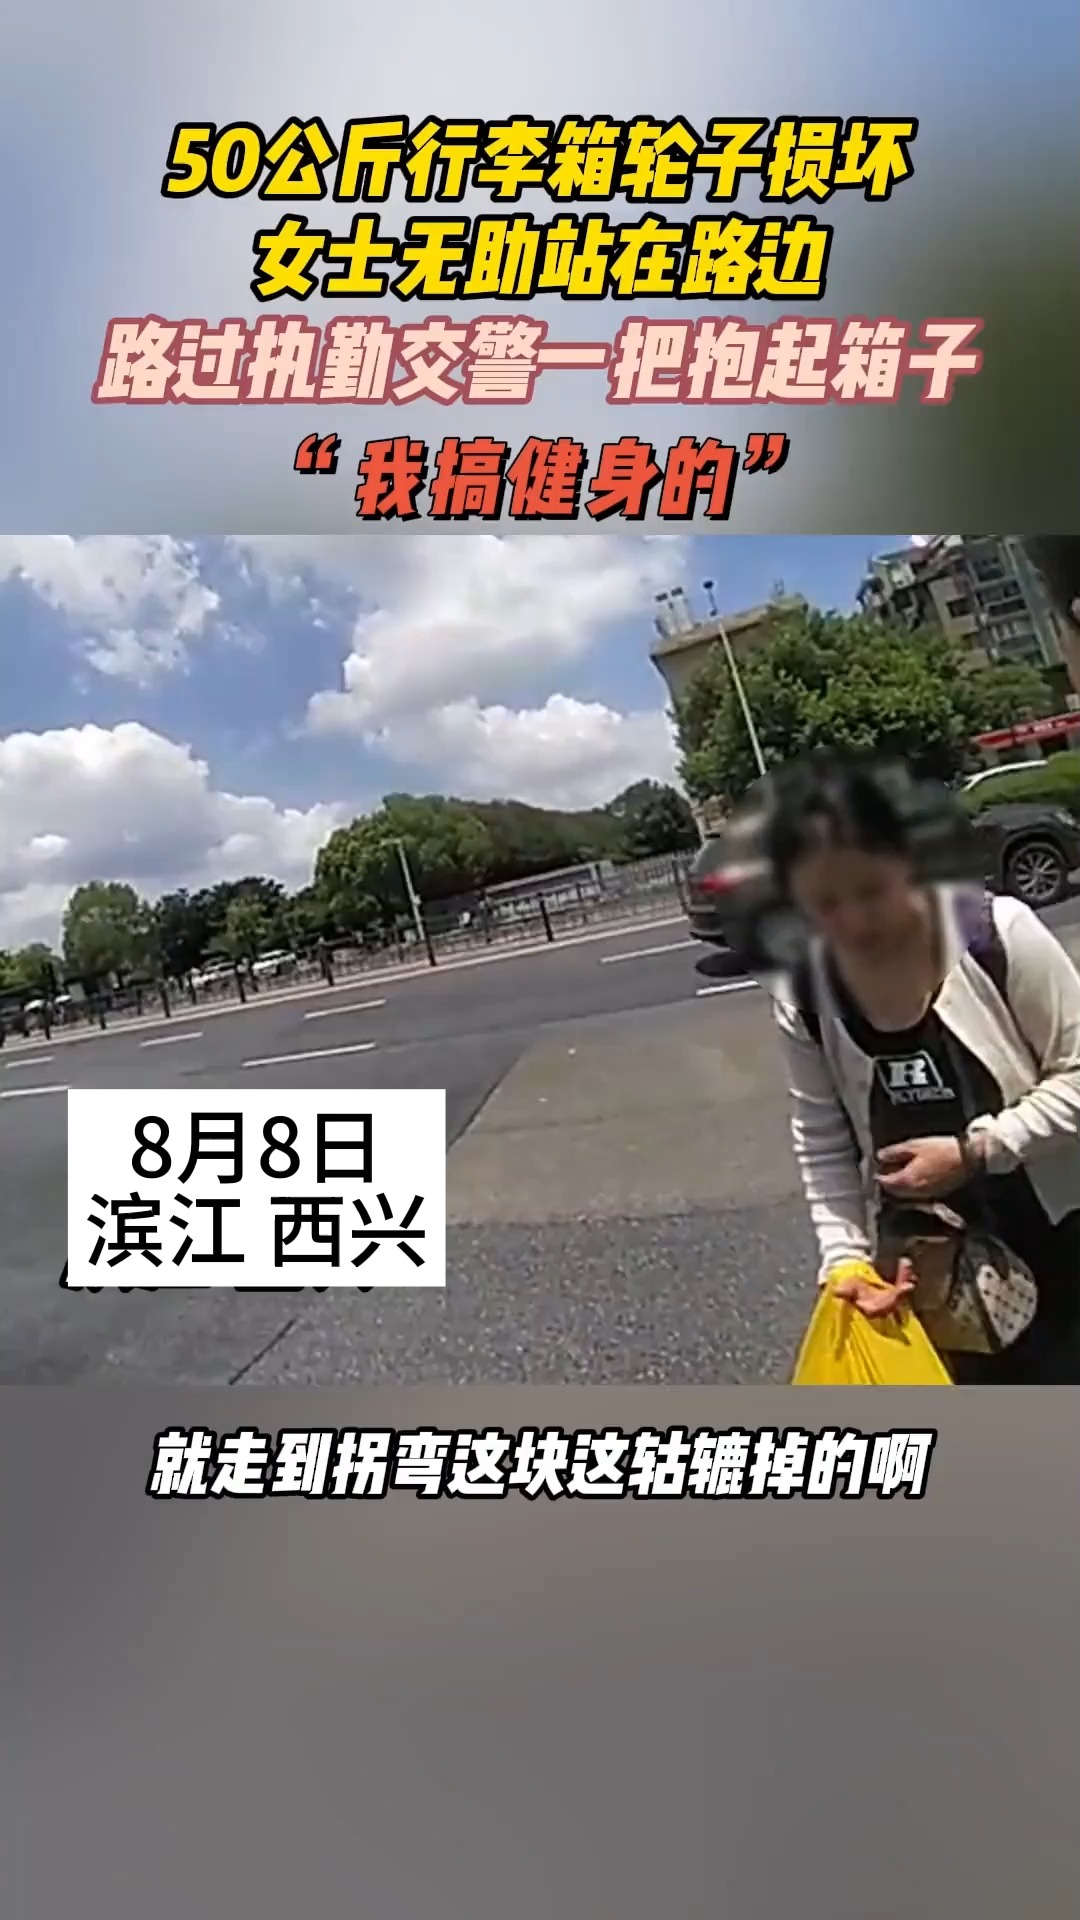 8月8日 滨江 西兴 50公斤行李箱轮子损坏 女士无助站在路边 路过执勤交警一把抱起箱子 “我搞健身的” 